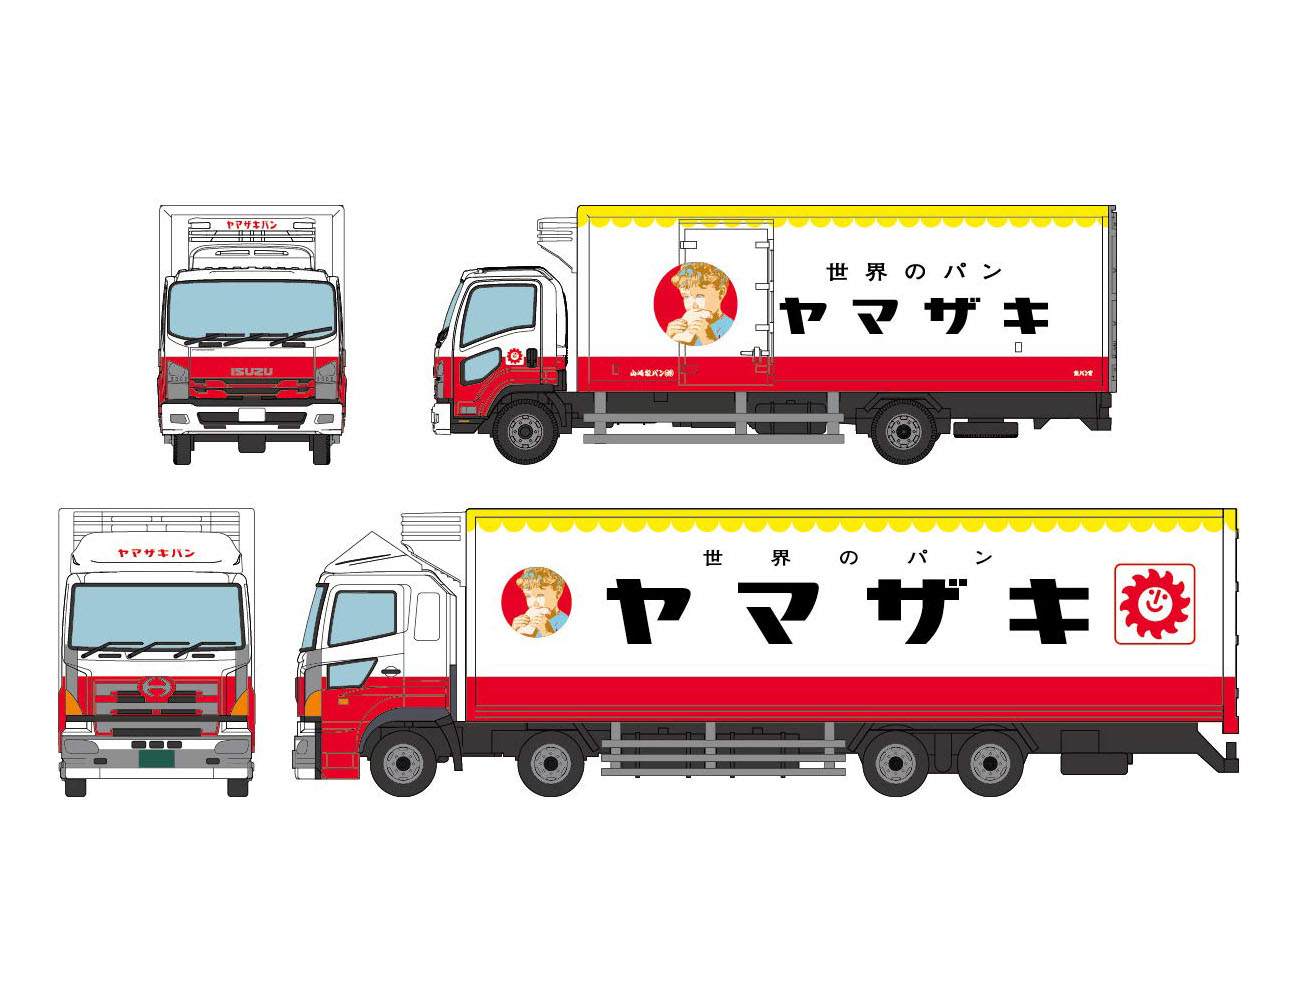 ザ・トラックコレクション『ヤマザキパン トラックセット』ミニカー-001